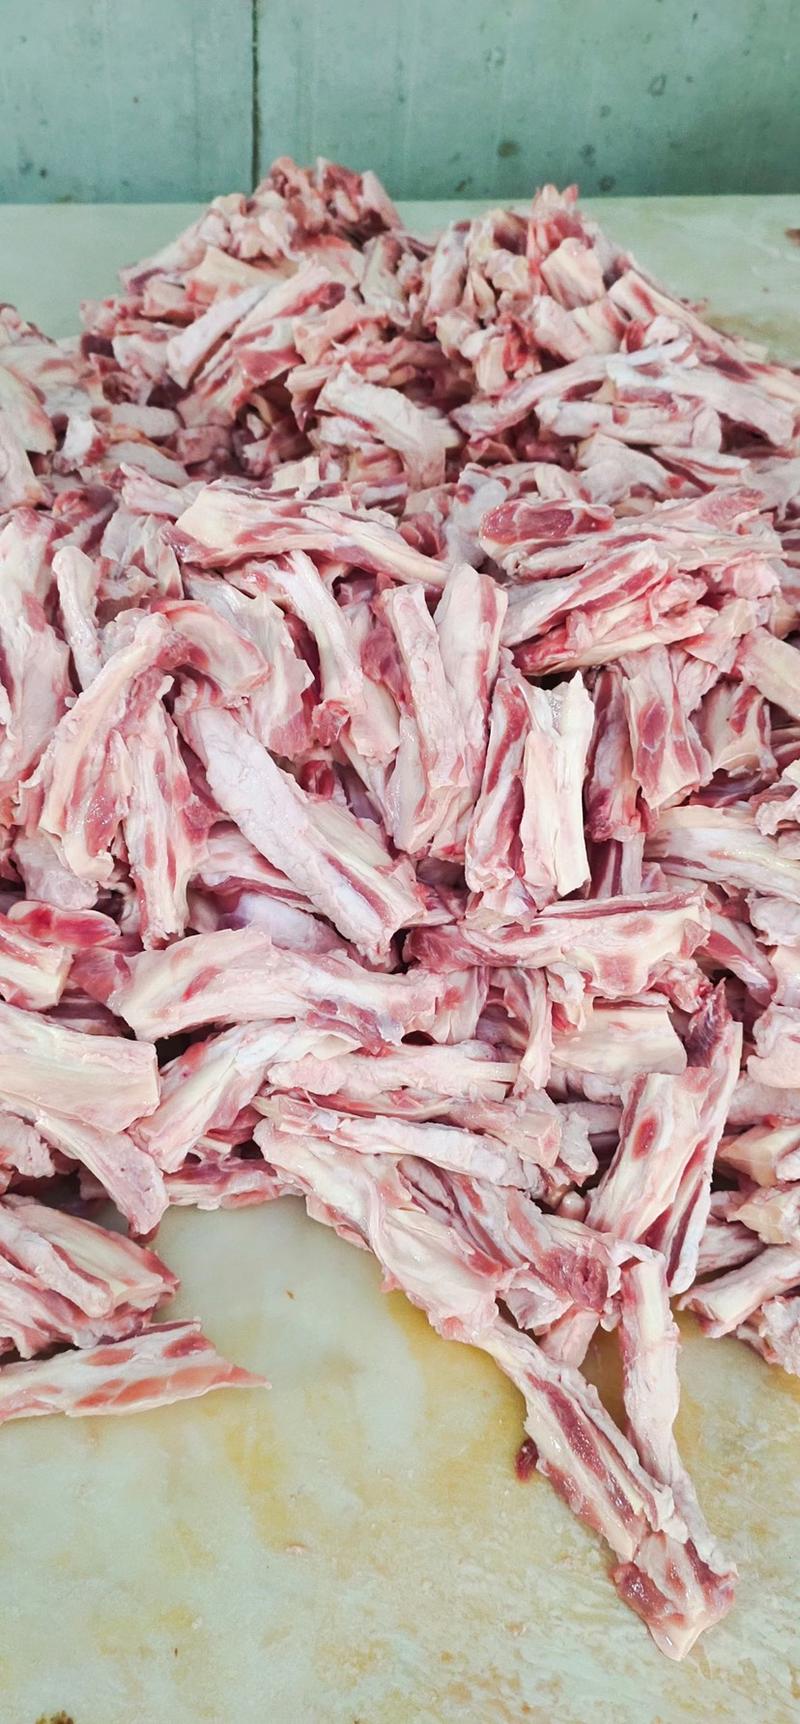 羔羊脖肉筋现货实拍含肉量高带肉羔羊肉筋